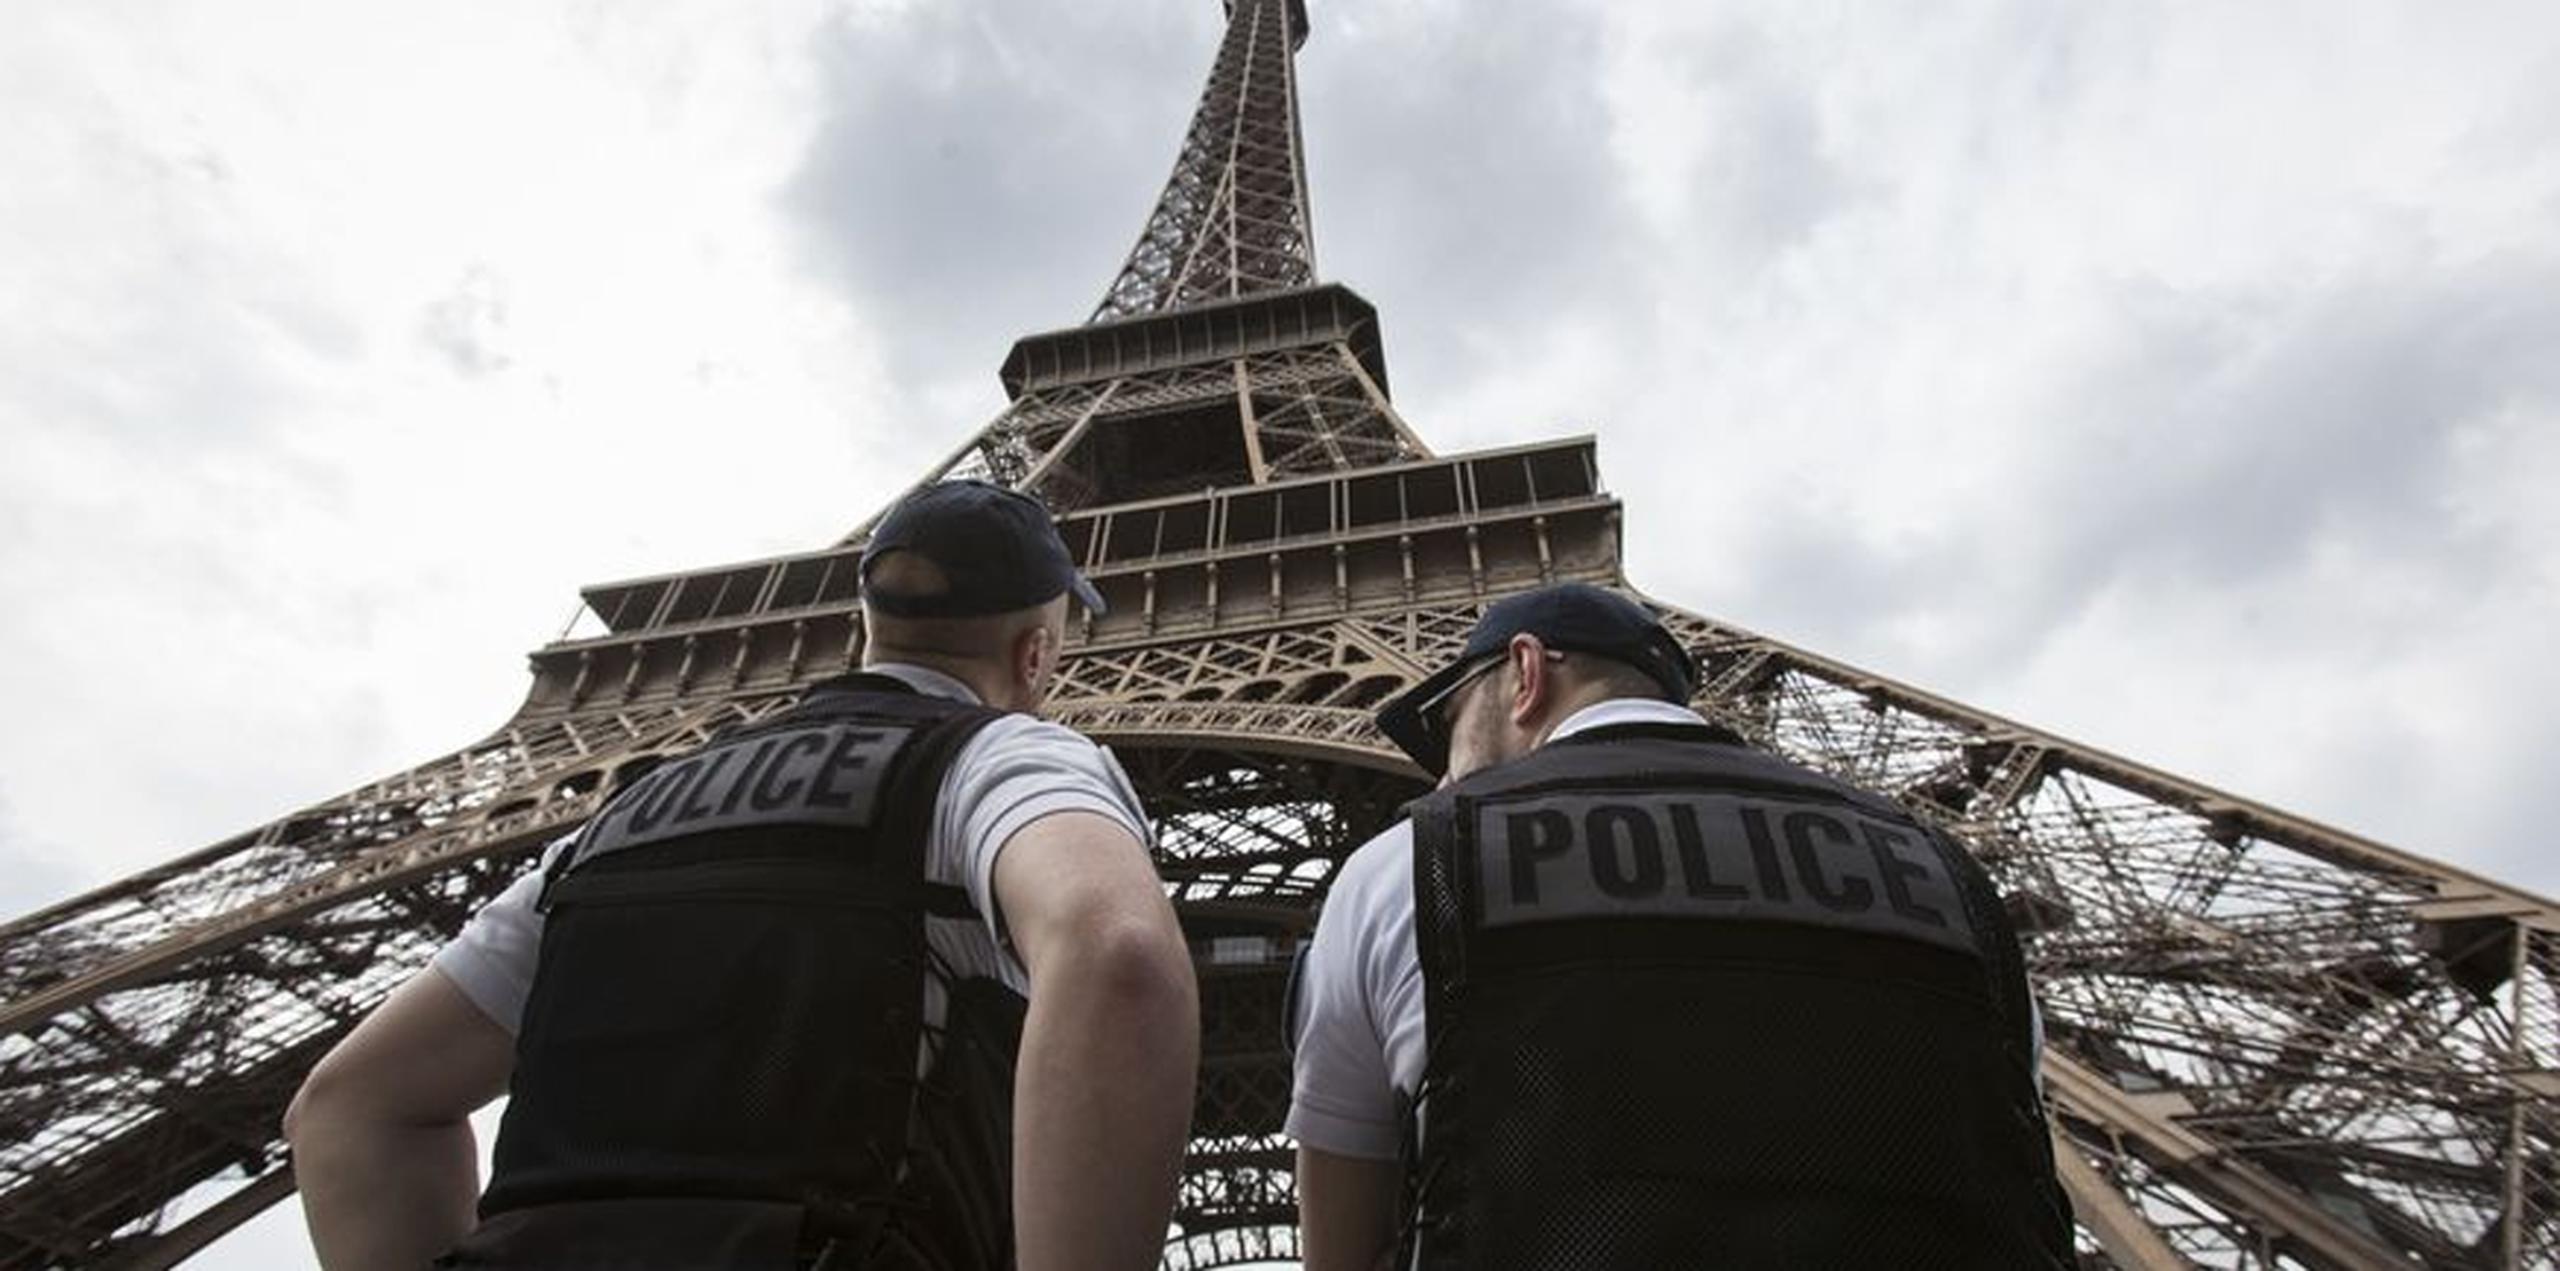 Los monumentos en la capital francesa ocasionalmente son evacuados por razones de seguridad debido a que el país permanece en alerta después de varios incidentes letales desde 2015. (AP)